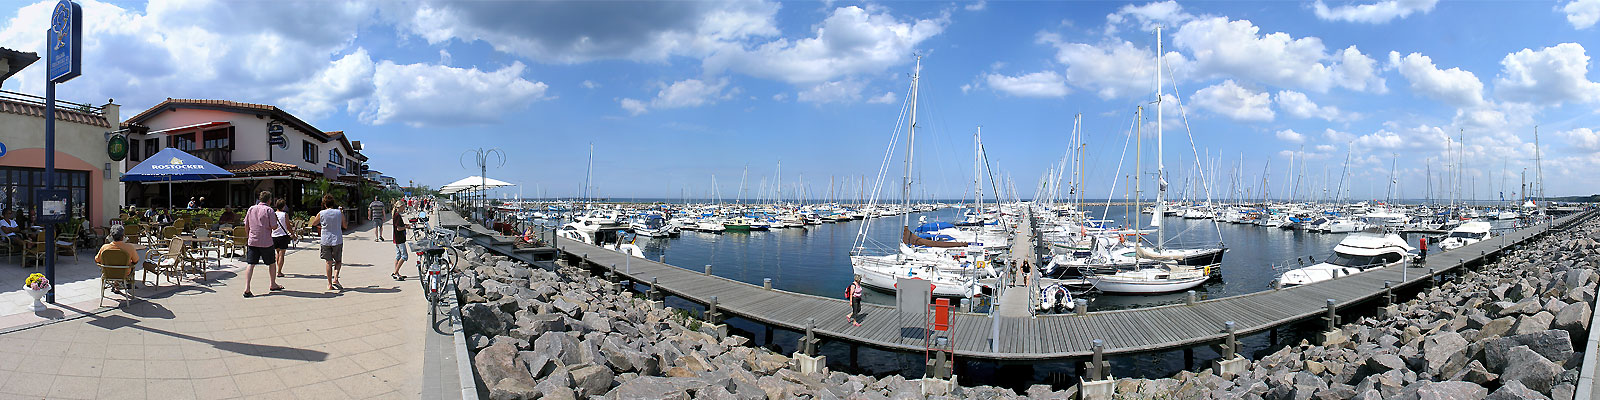 Panorama: Kühlungsborn Bootshafen - Motivnummer: ost-kue-04